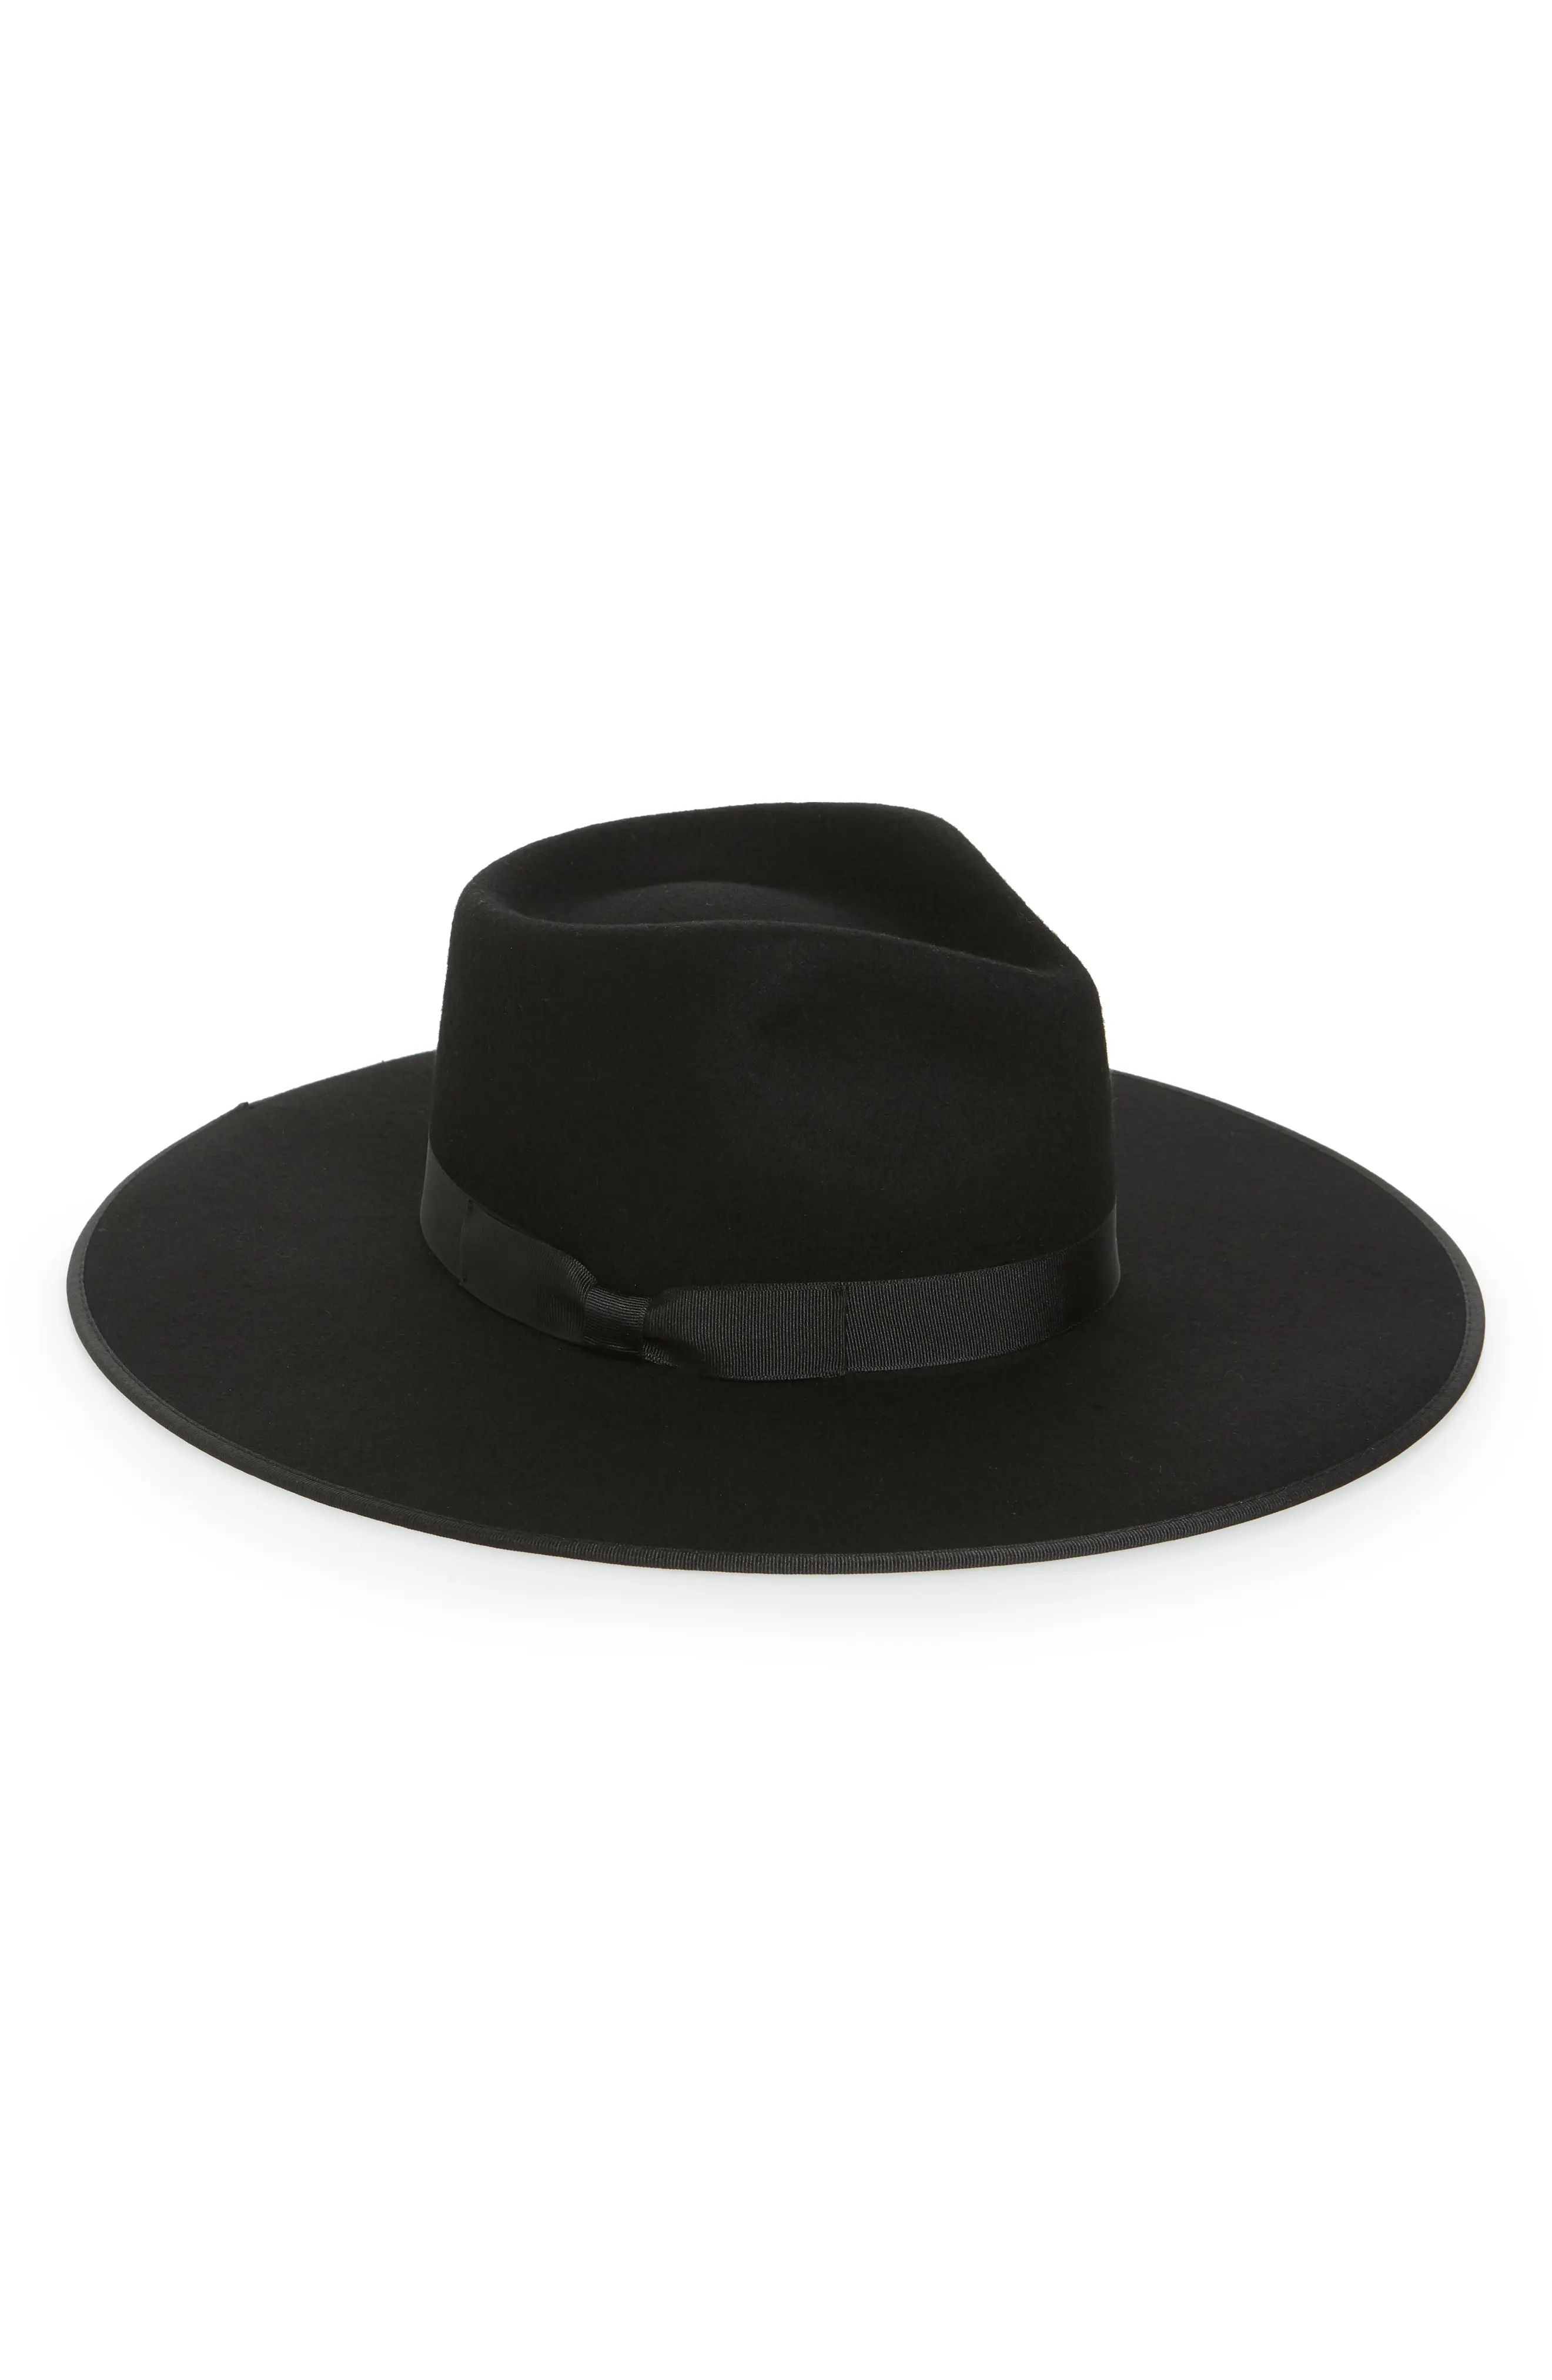 Lack of Color Rancher Hat in Black at Nordstrom, Size Medium | Nordstrom